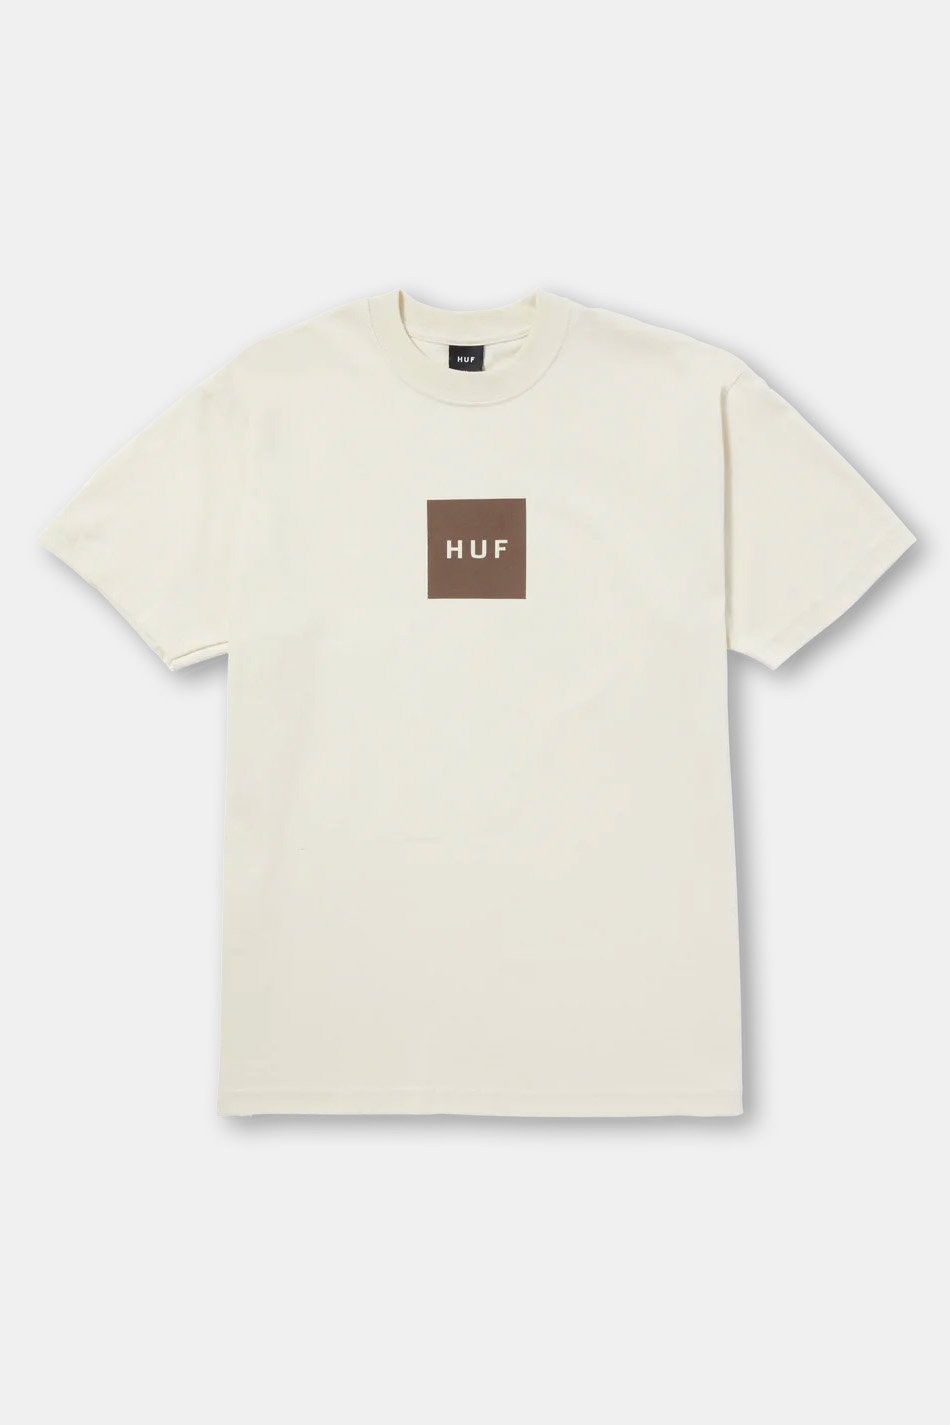 Bone Huf Set Box T-shirt